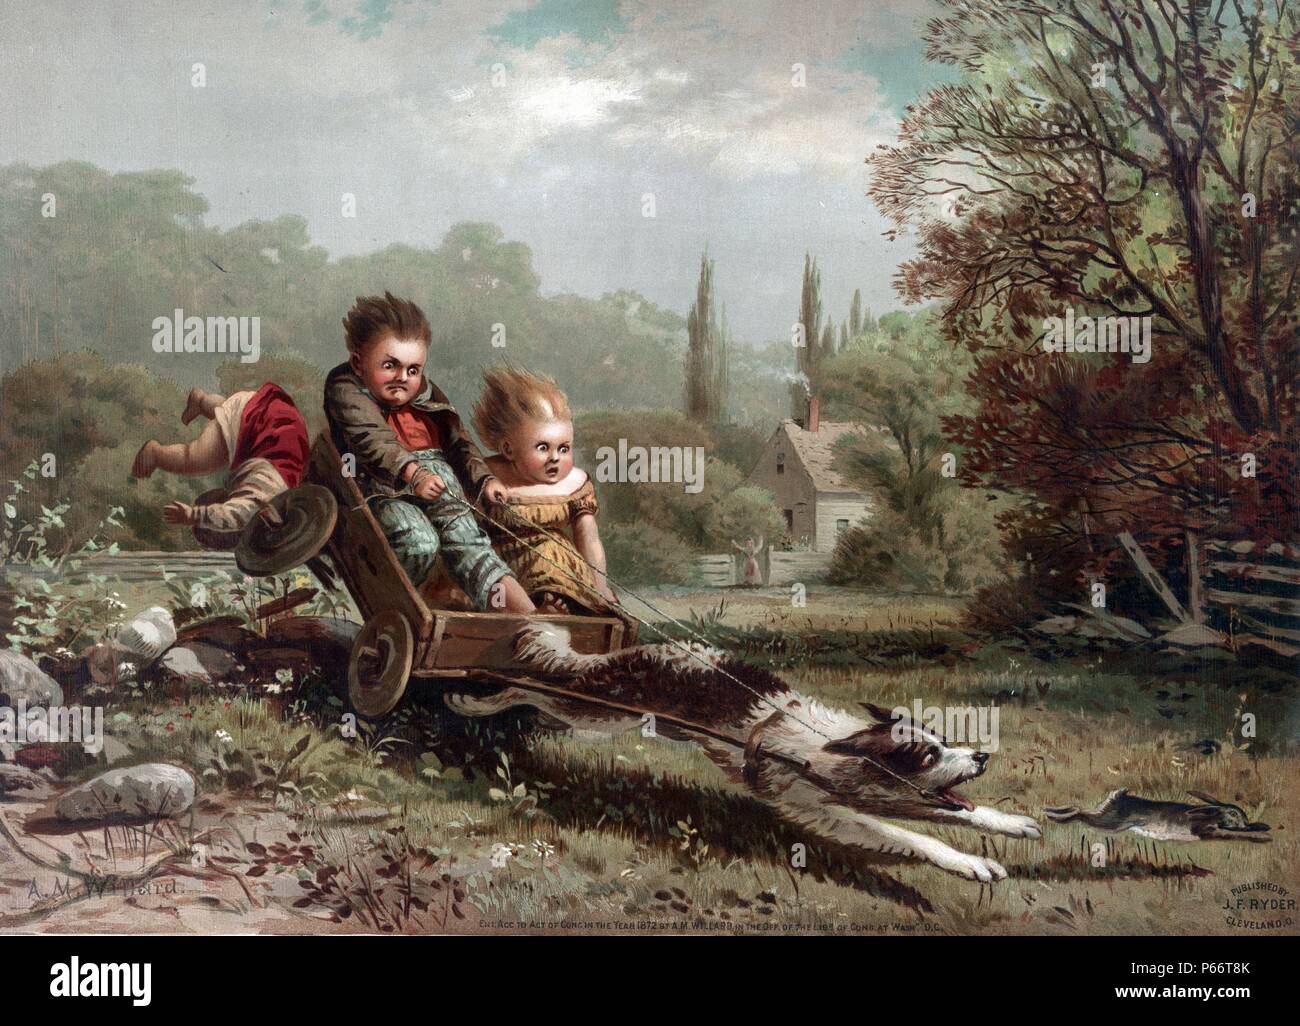 Kinder, die auf einem runaway Warenkorb von Archibald Willard, 1836-1918, Künstler. Veröffentlicht von J.F. Ryder, c 1873. zeigt einen kleinen Wagen zu einem Hund, der auf der Jagd nach einem Kaninchen; zwei Kinder sind in den Wagen, ein Drittel hat prallte, als der Fahrer versucht, die Kontrolle über den Hund wieder zu erlangen. Stockfoto